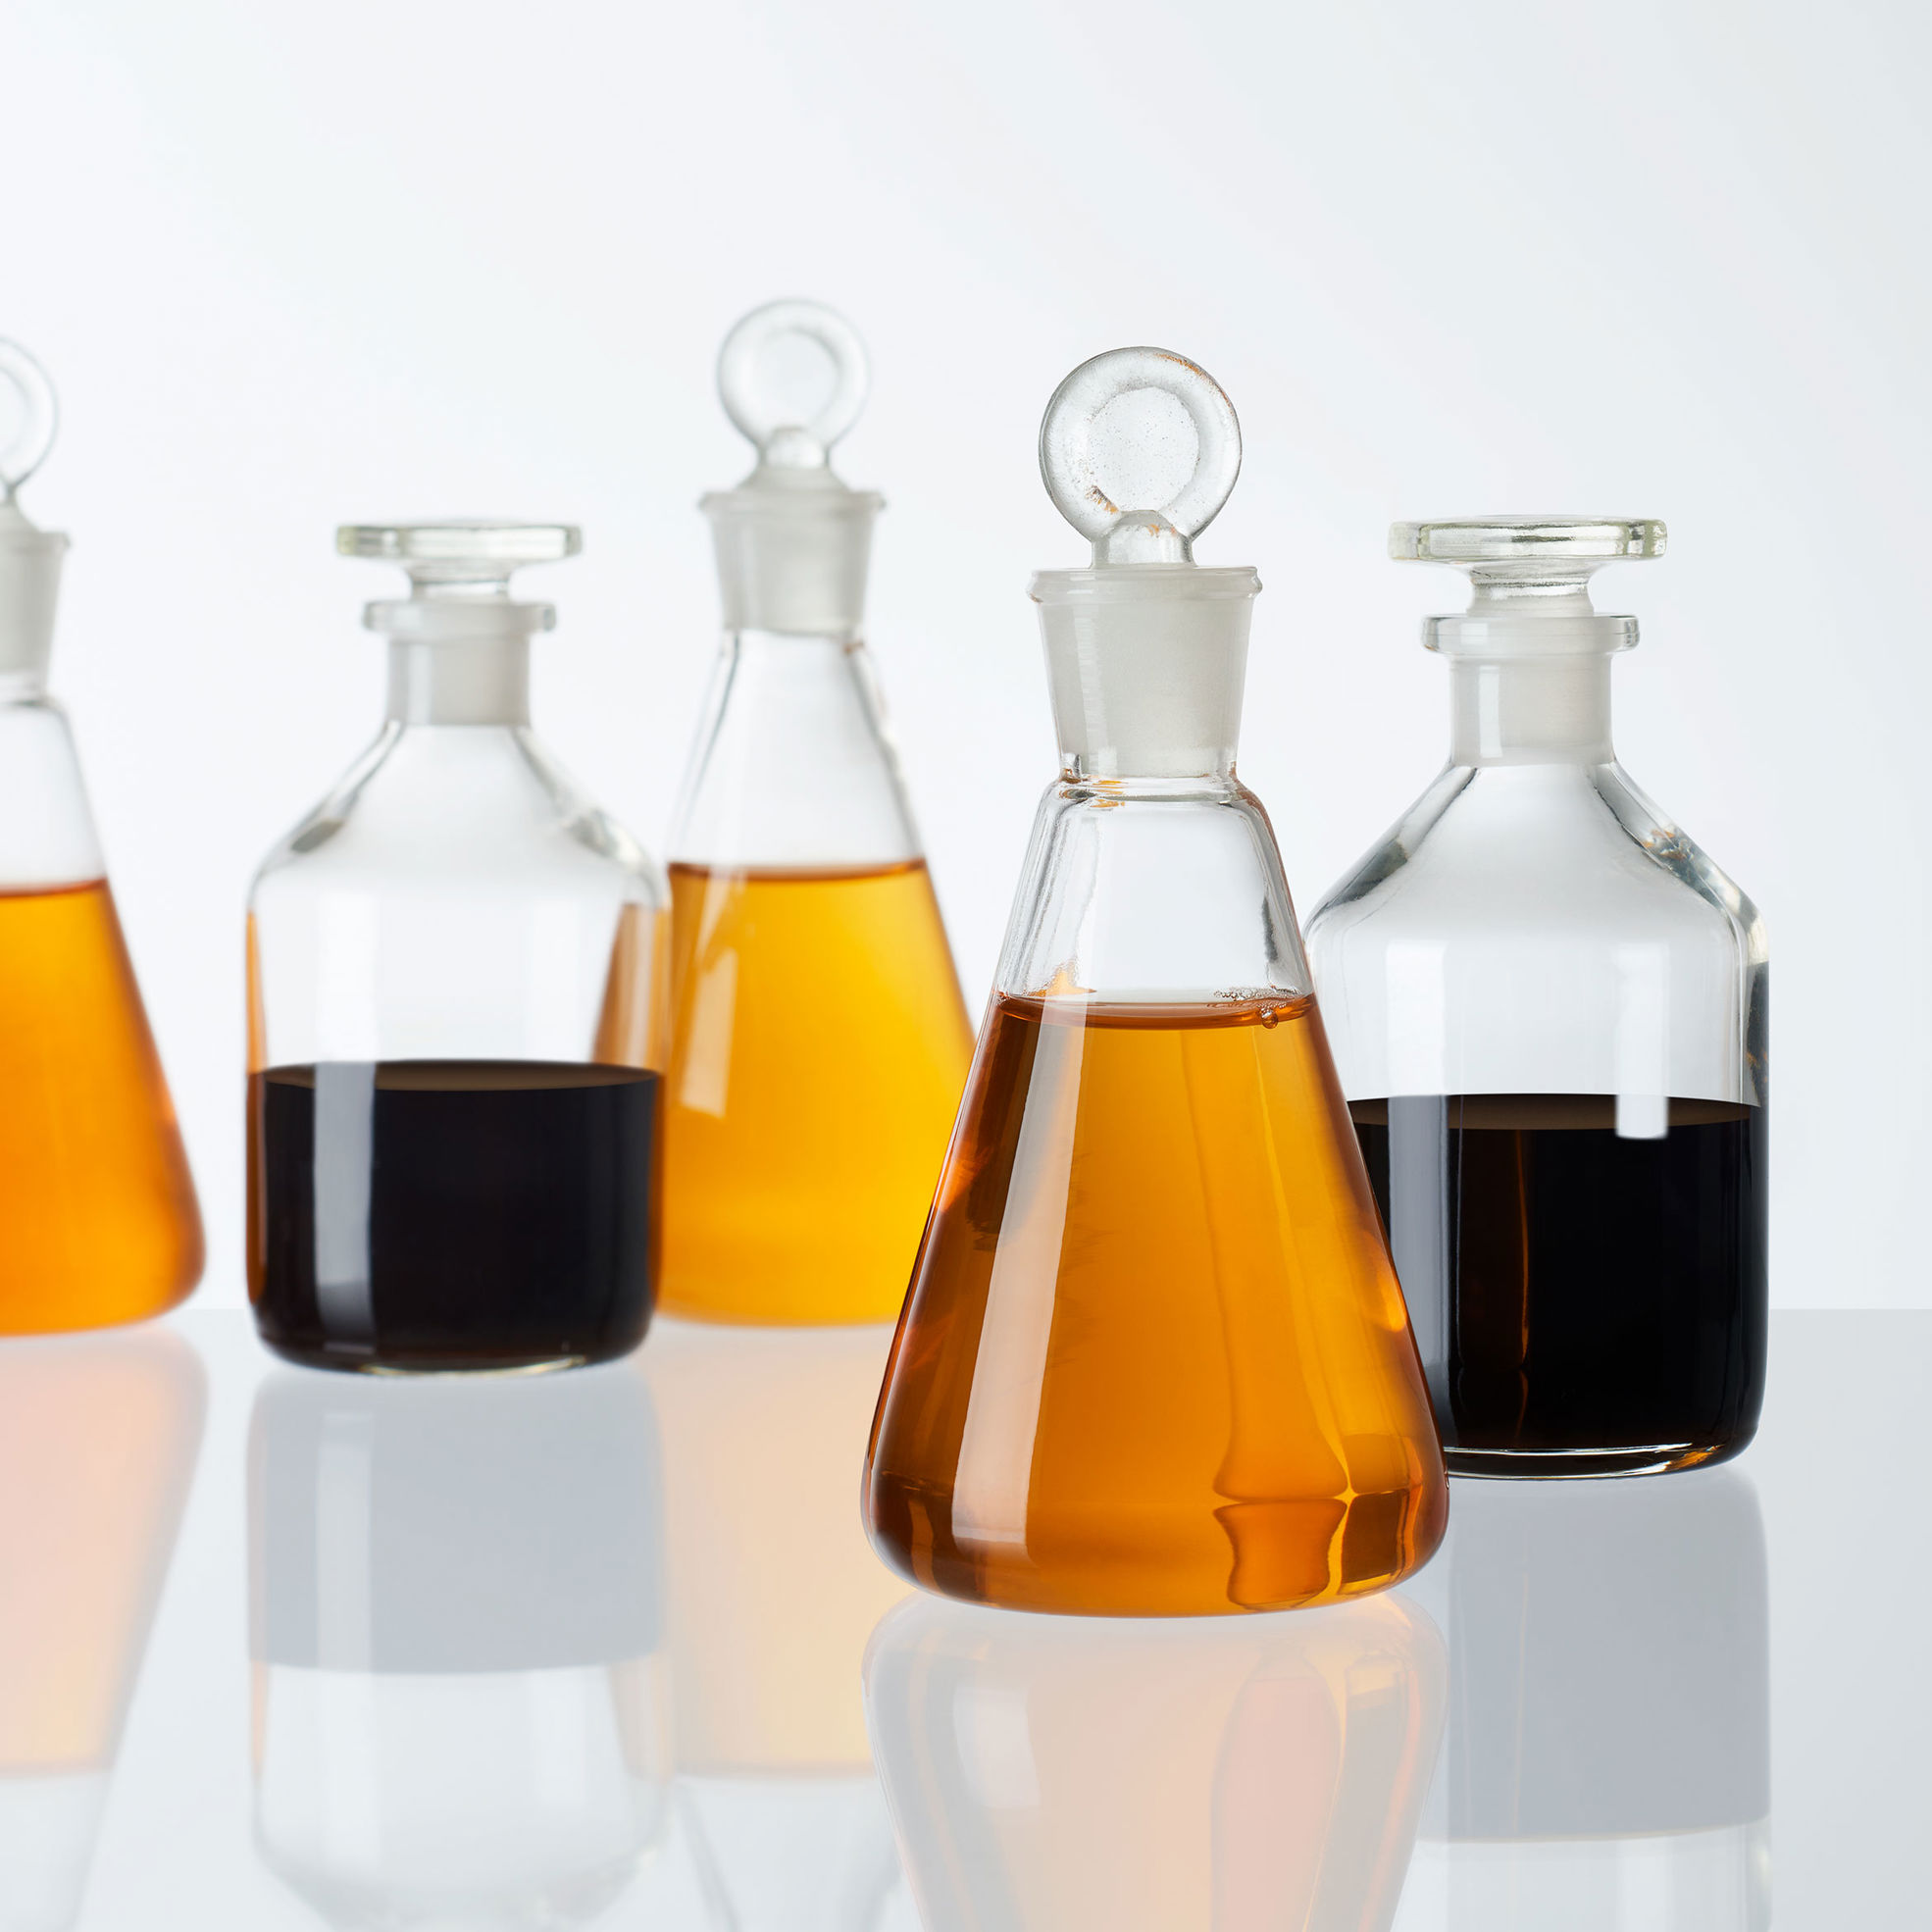 Biochemicals in bottles